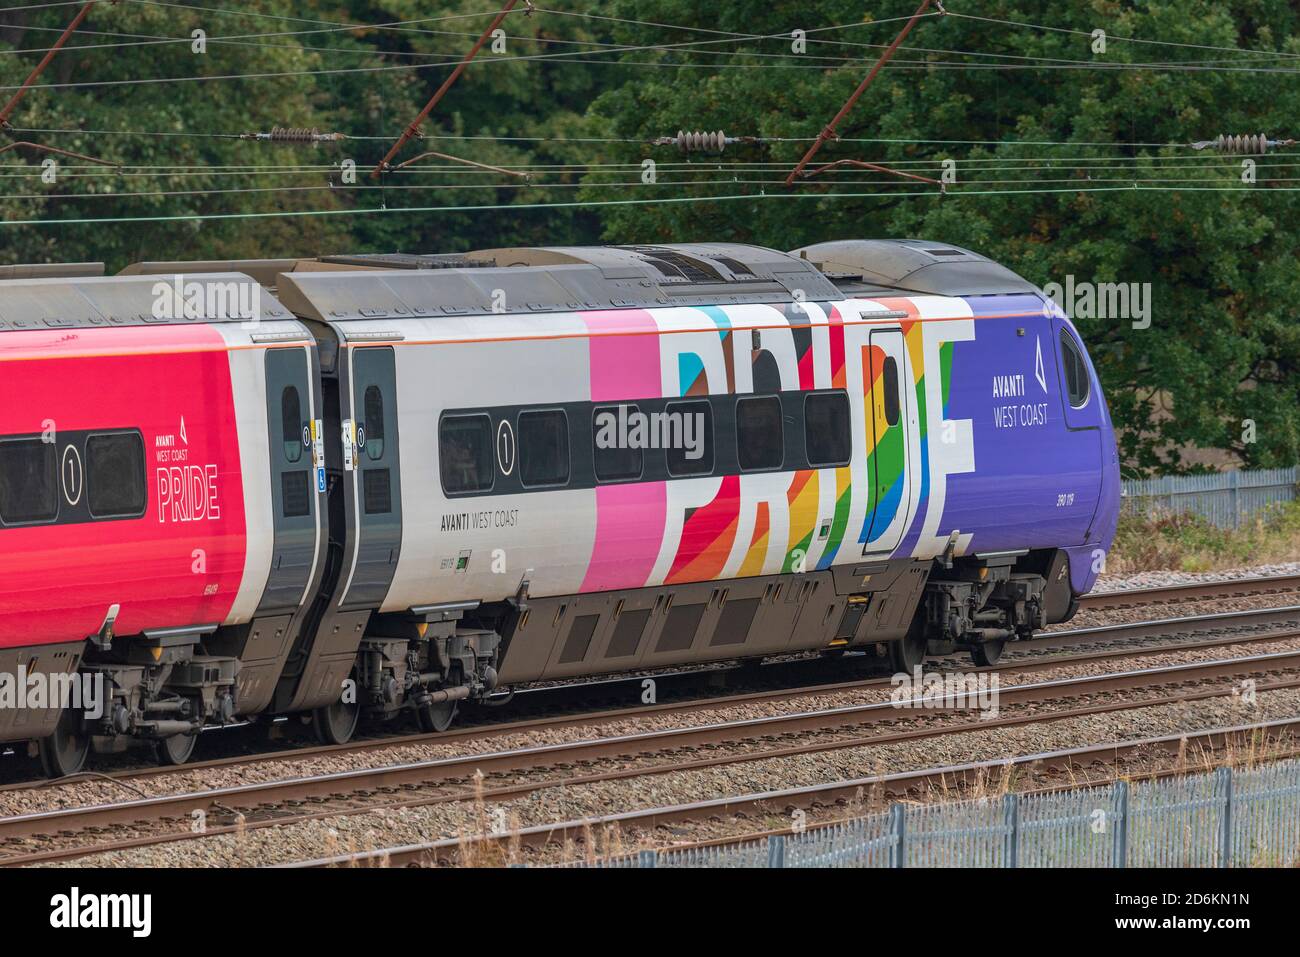 Avanti Pride Pendolino train on the West Coast Main Line. Multicoloured wrapped train. Stock Photo